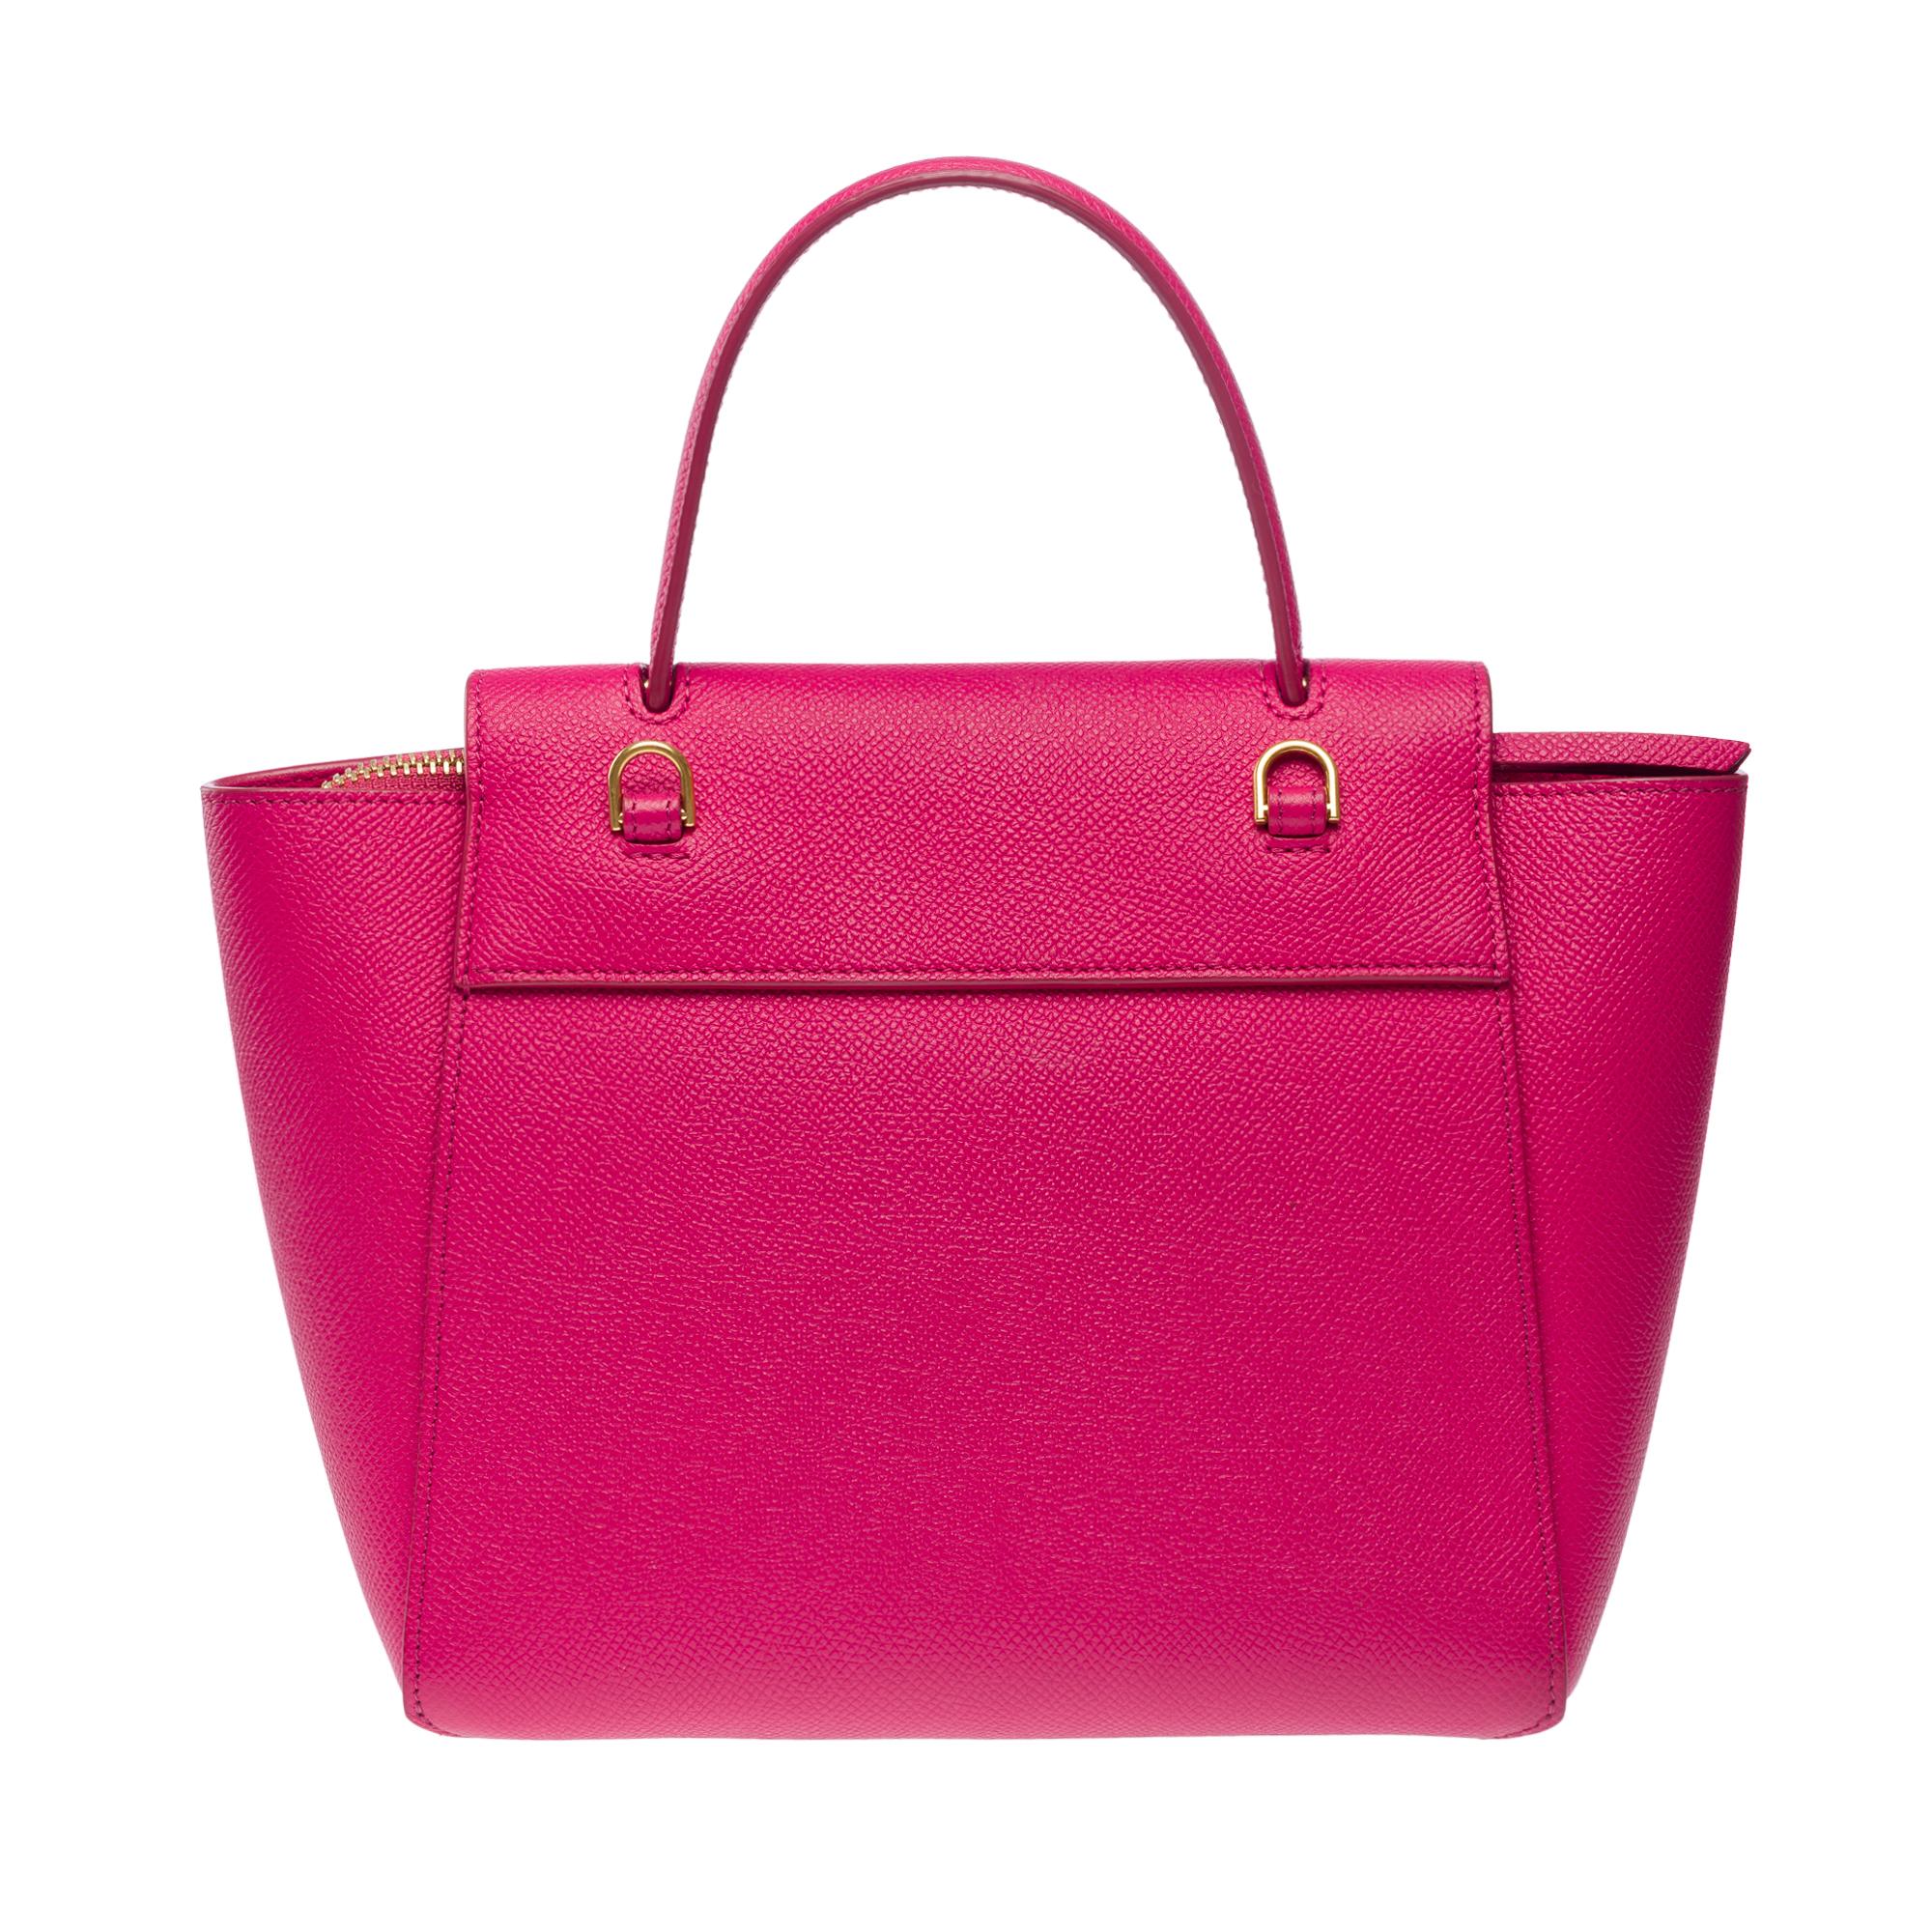 Celine Belt Nano handbag strap in pink calf leather, GHW 1